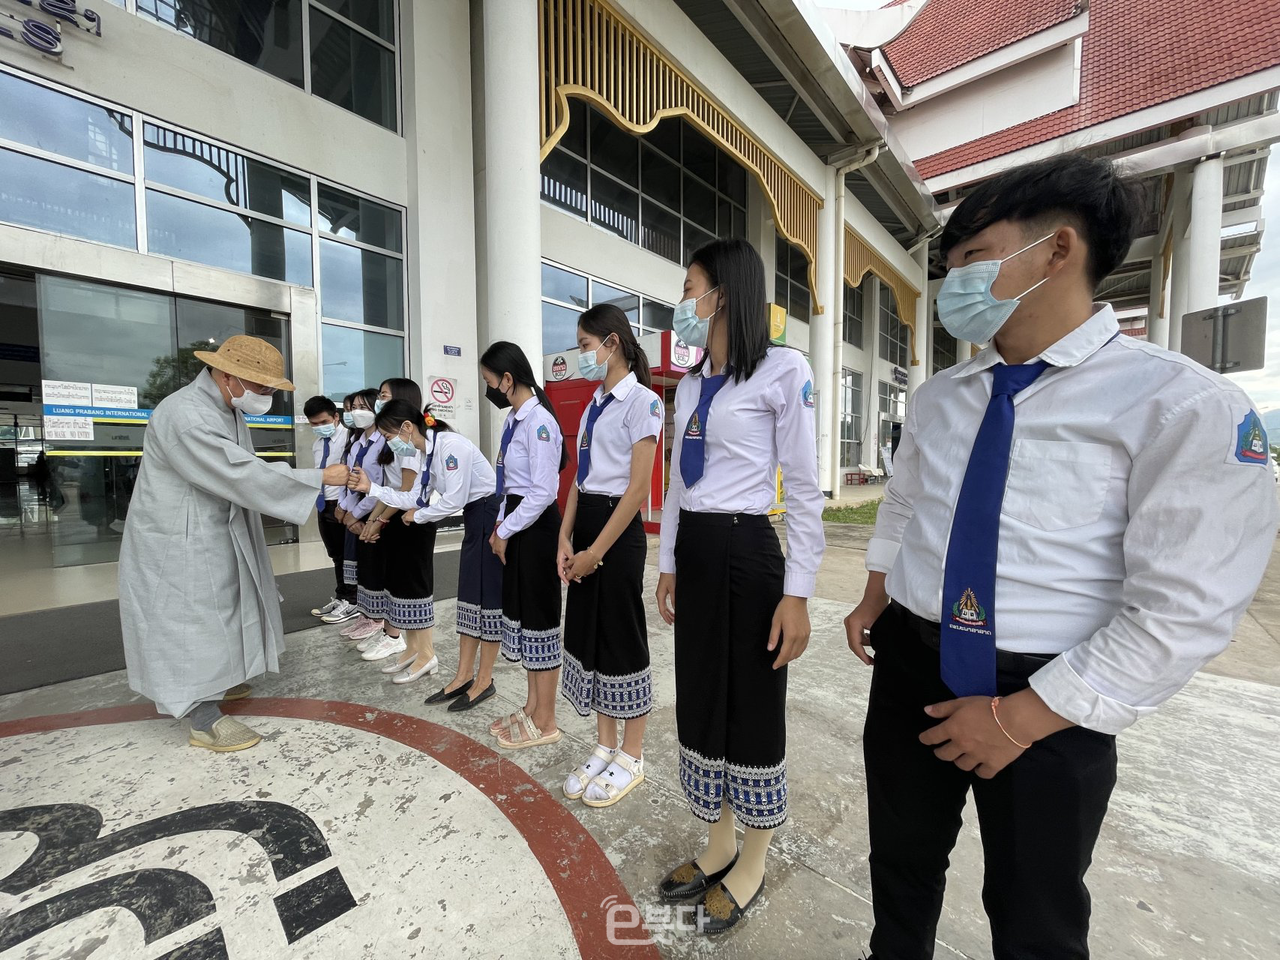 루앙프라방 수파누봉대학교 한국어학과 학생들이 공항에서 한나래문화재단을 환영하고 있다.